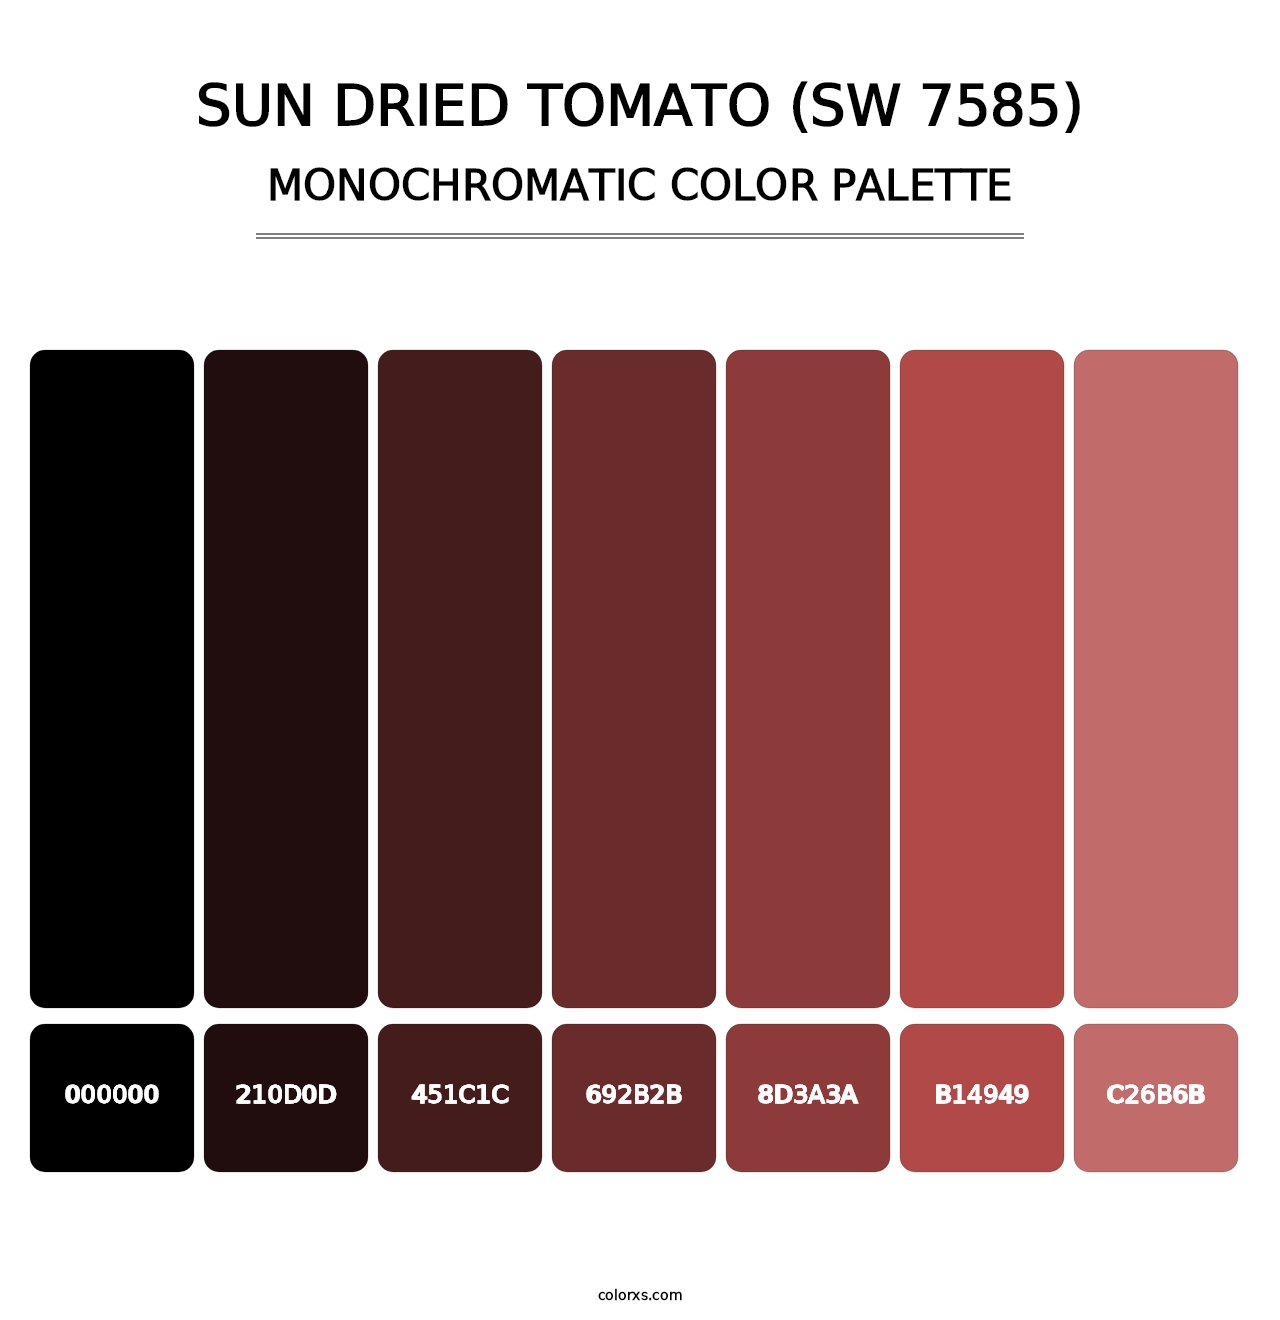 Sun Dried Tomato (SW 7585) - Monochromatic Color Palette